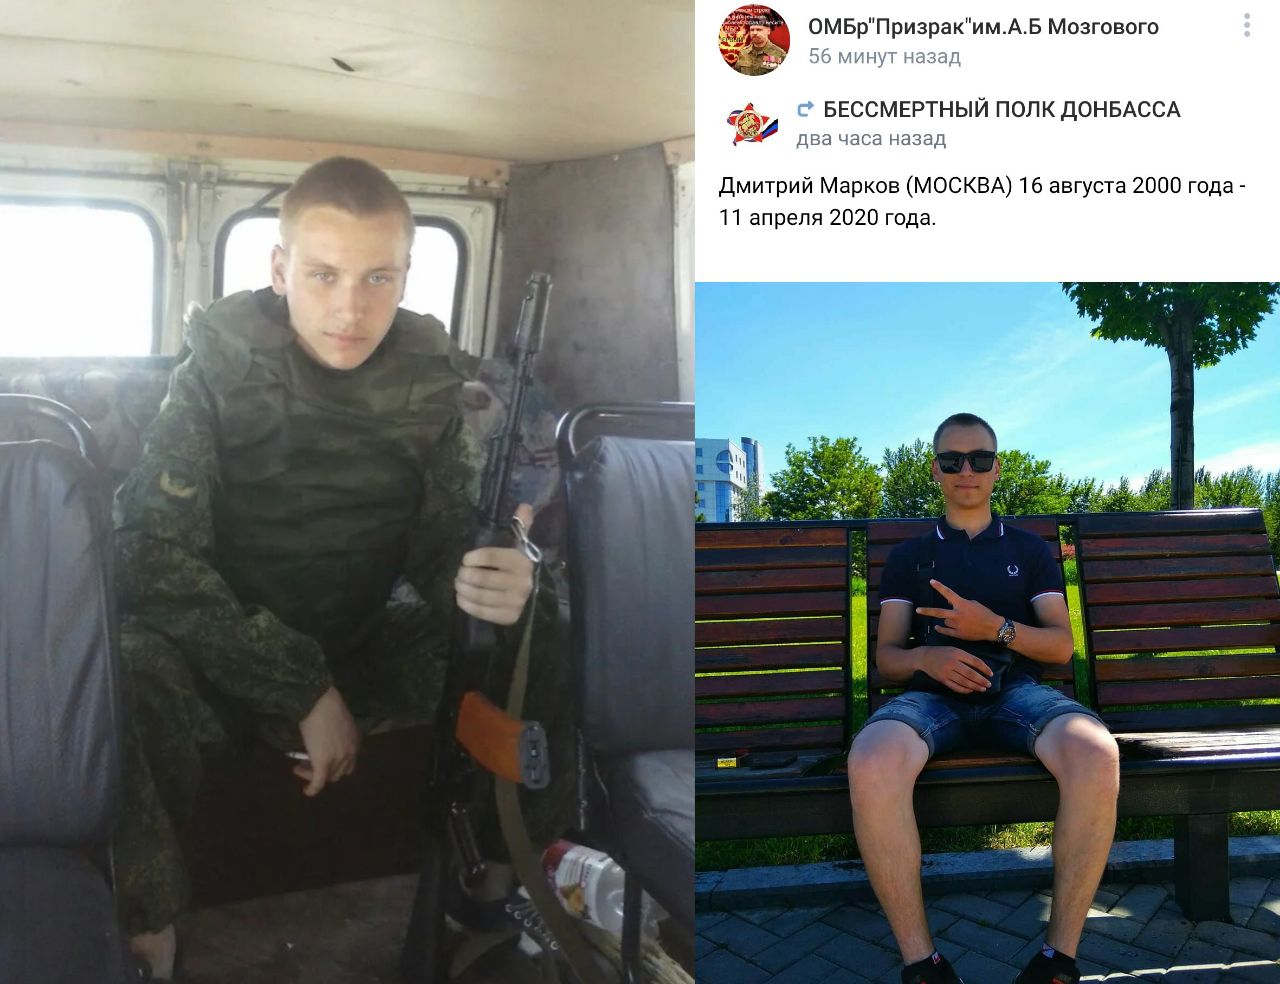 Списки погибших днр. Русские добровольцы на Донбассе.